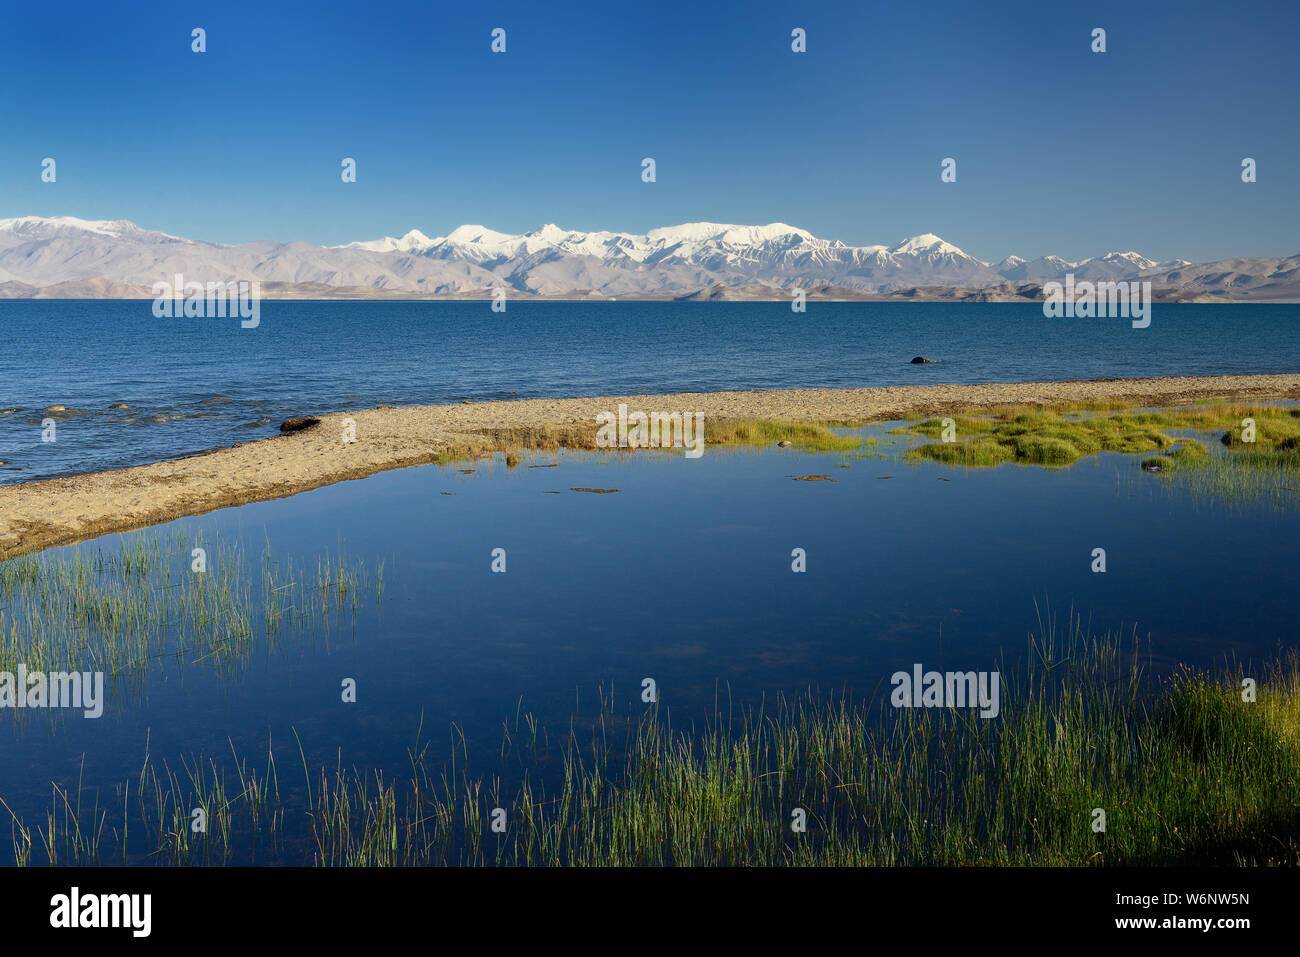 El hermoso lago Karakul por la Pamir highway. Vista sobre el lago y el pico Lenin cerca de Karakul Village, en el Pamir, Tayikistán, en Asia Central. Foto de stock